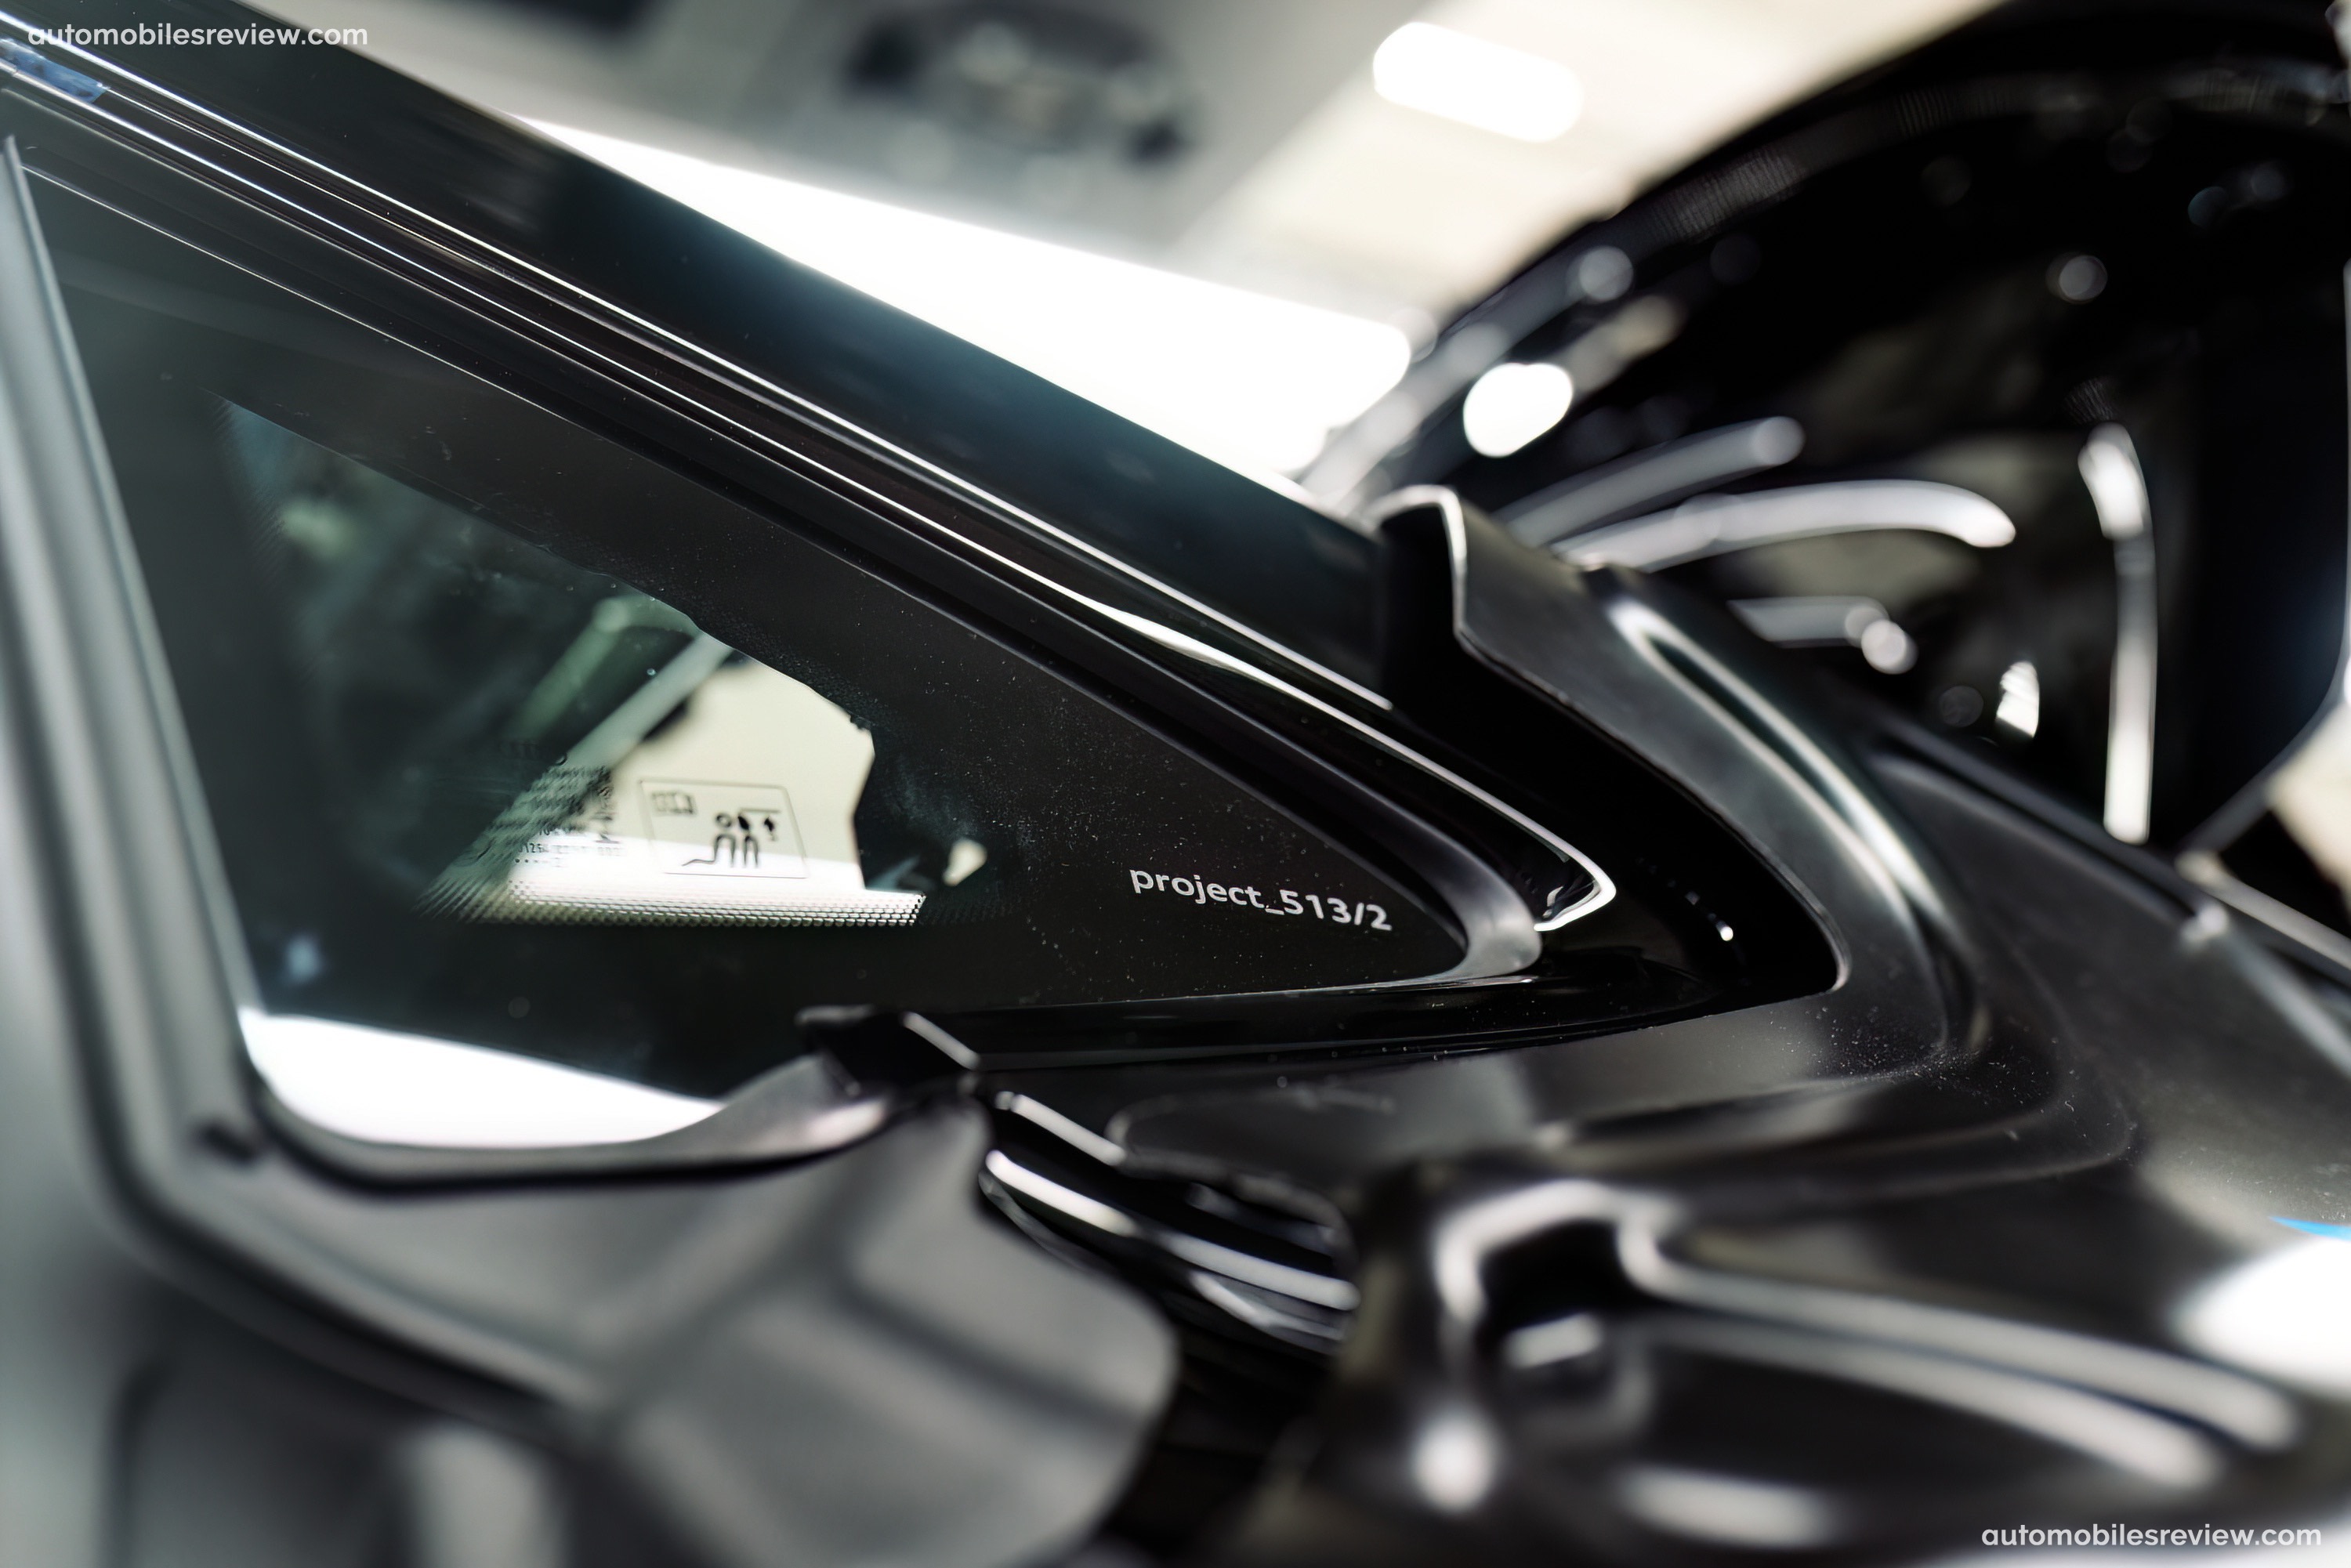 Audi RS e-tron GT project 513-2